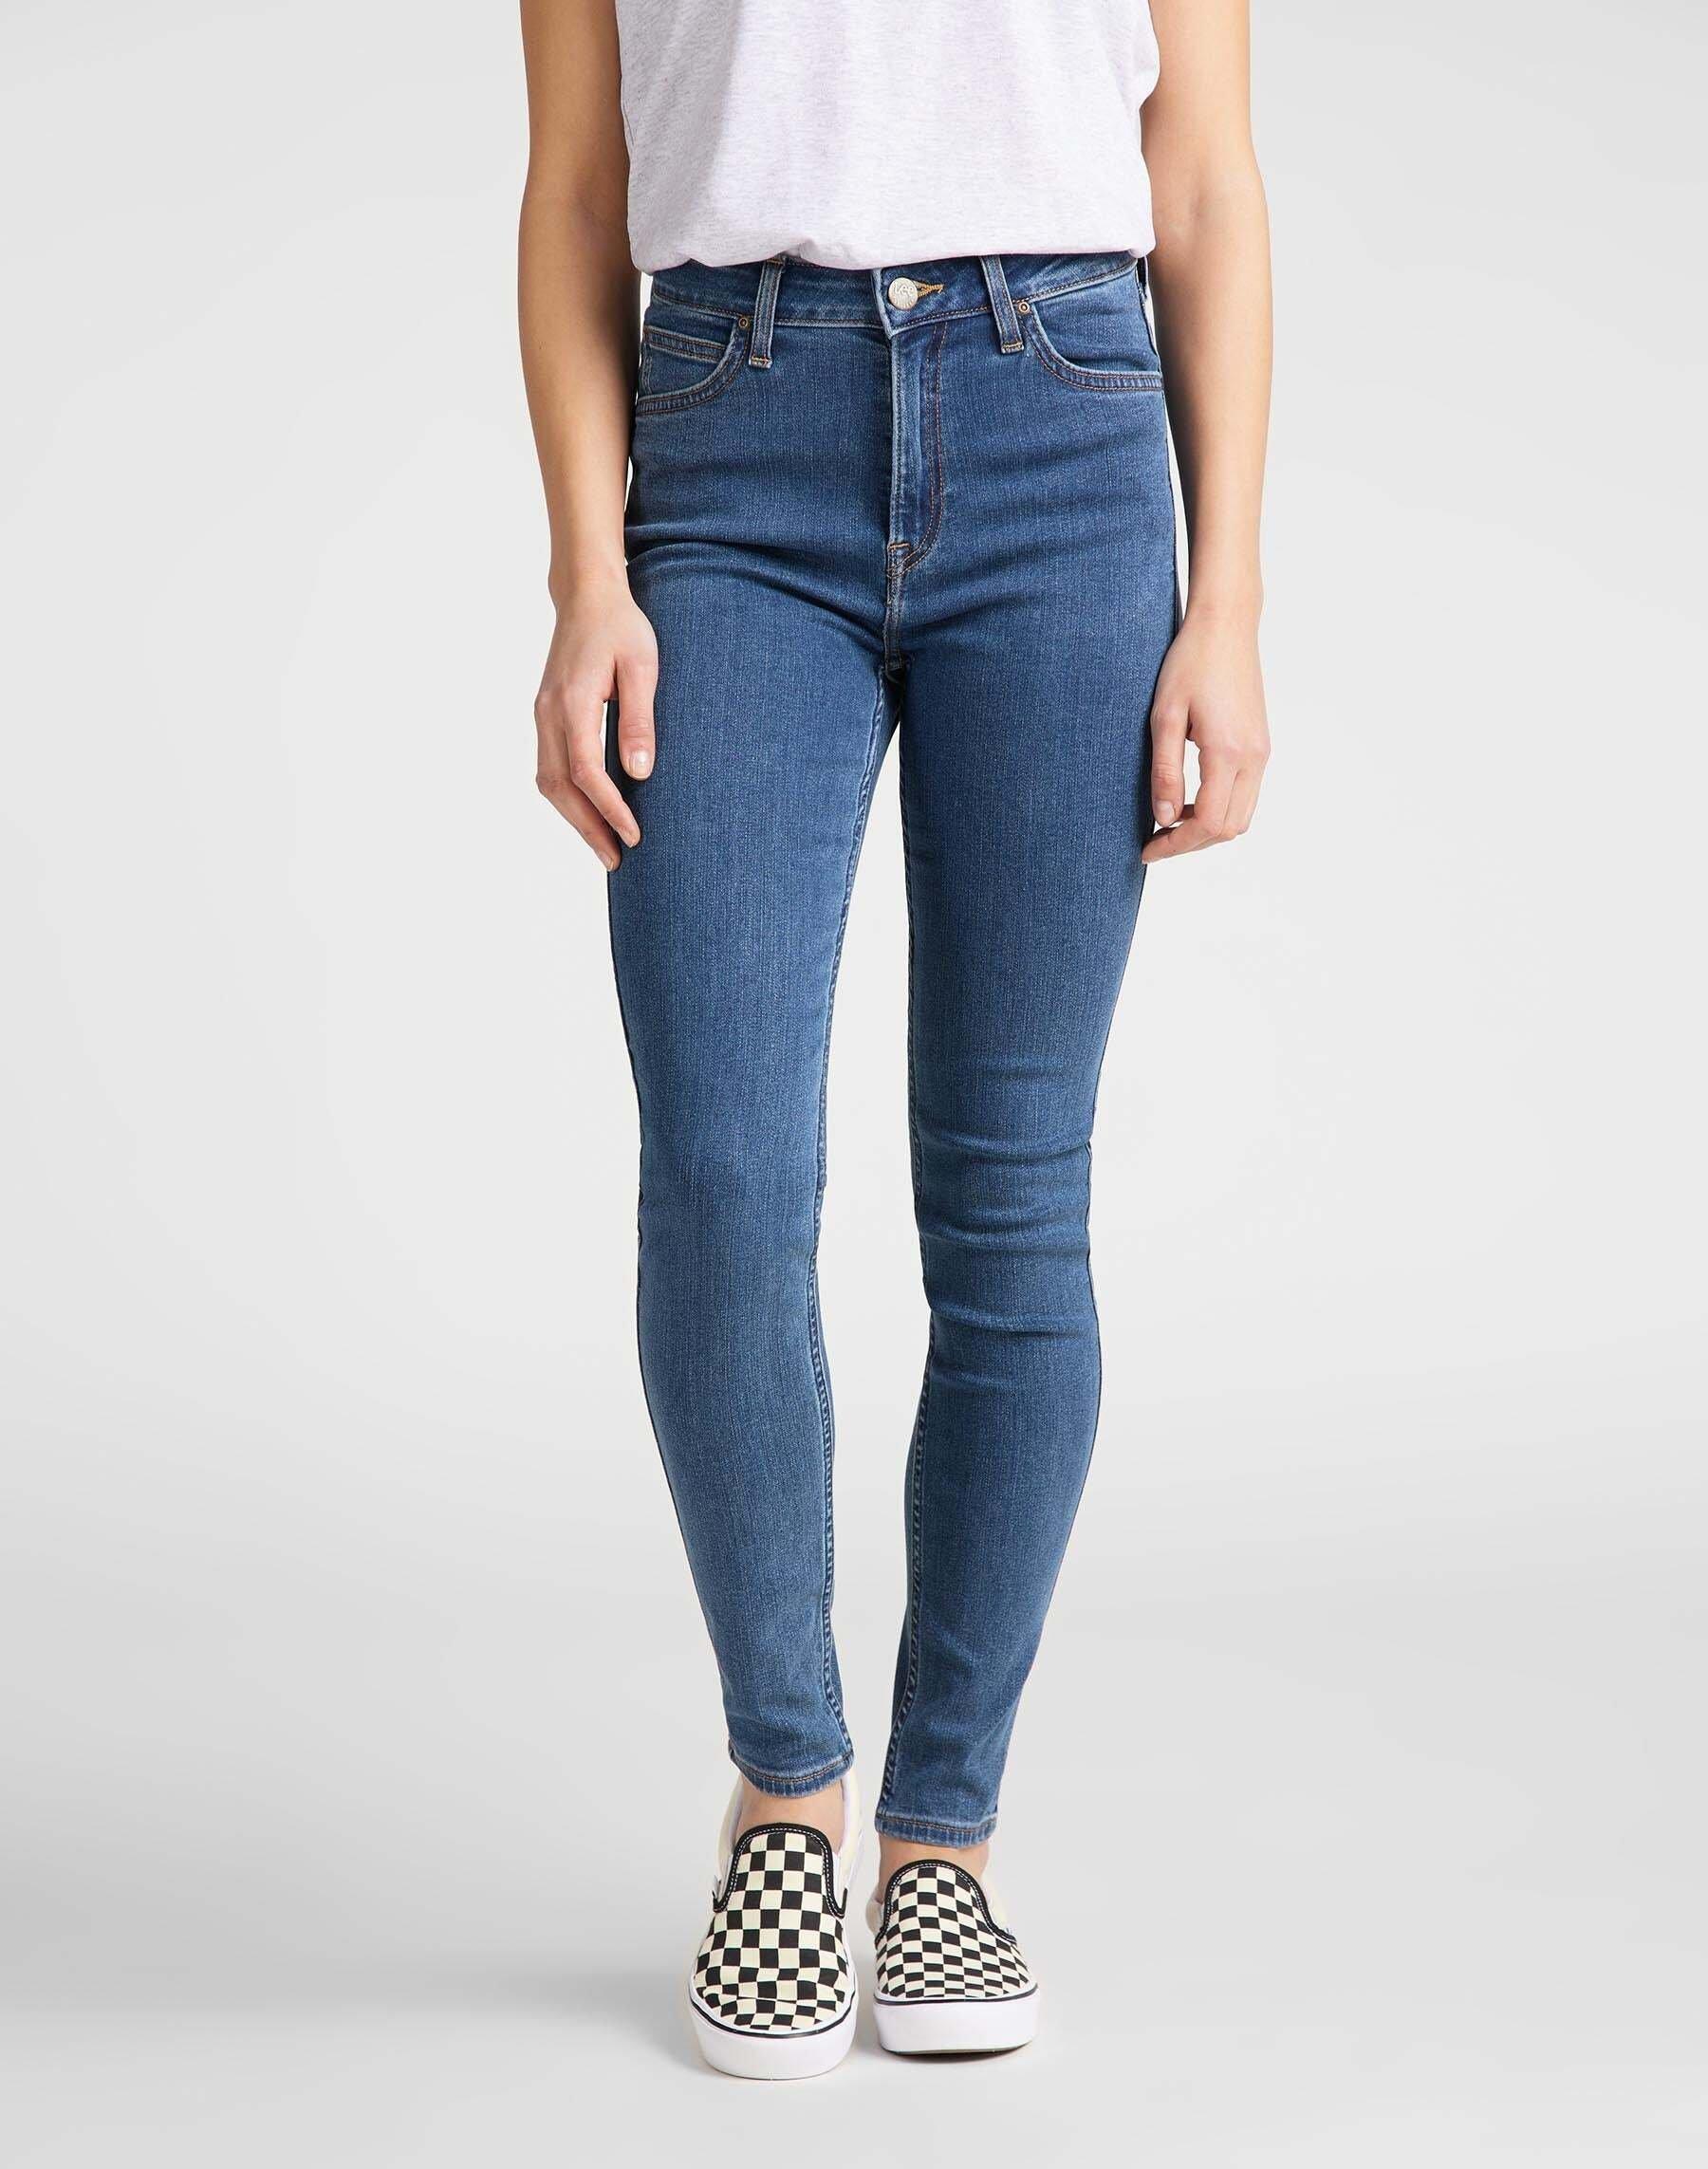 Jeans Super Skinny Fit Ivy High Waist Damen Blau Denim L33/W26 von Lee